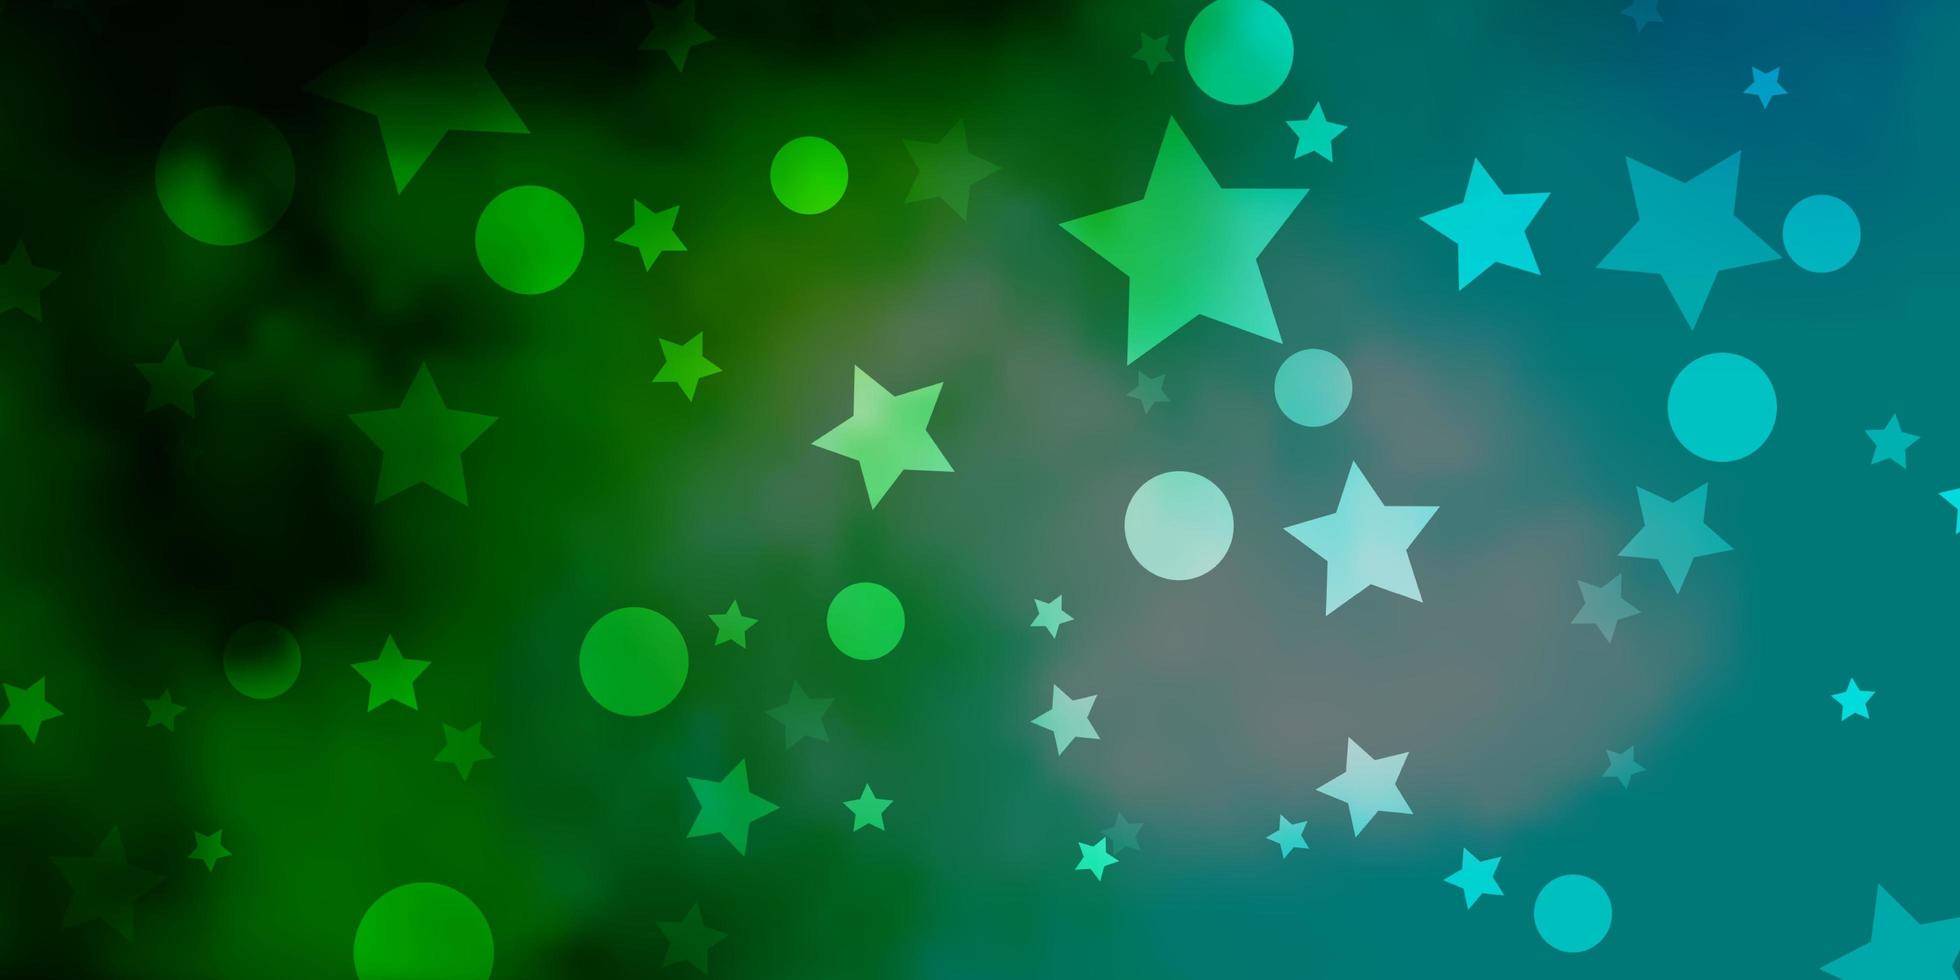 ljusblå, grön vektorbakgrund med cirklar, stjärnor. vektor